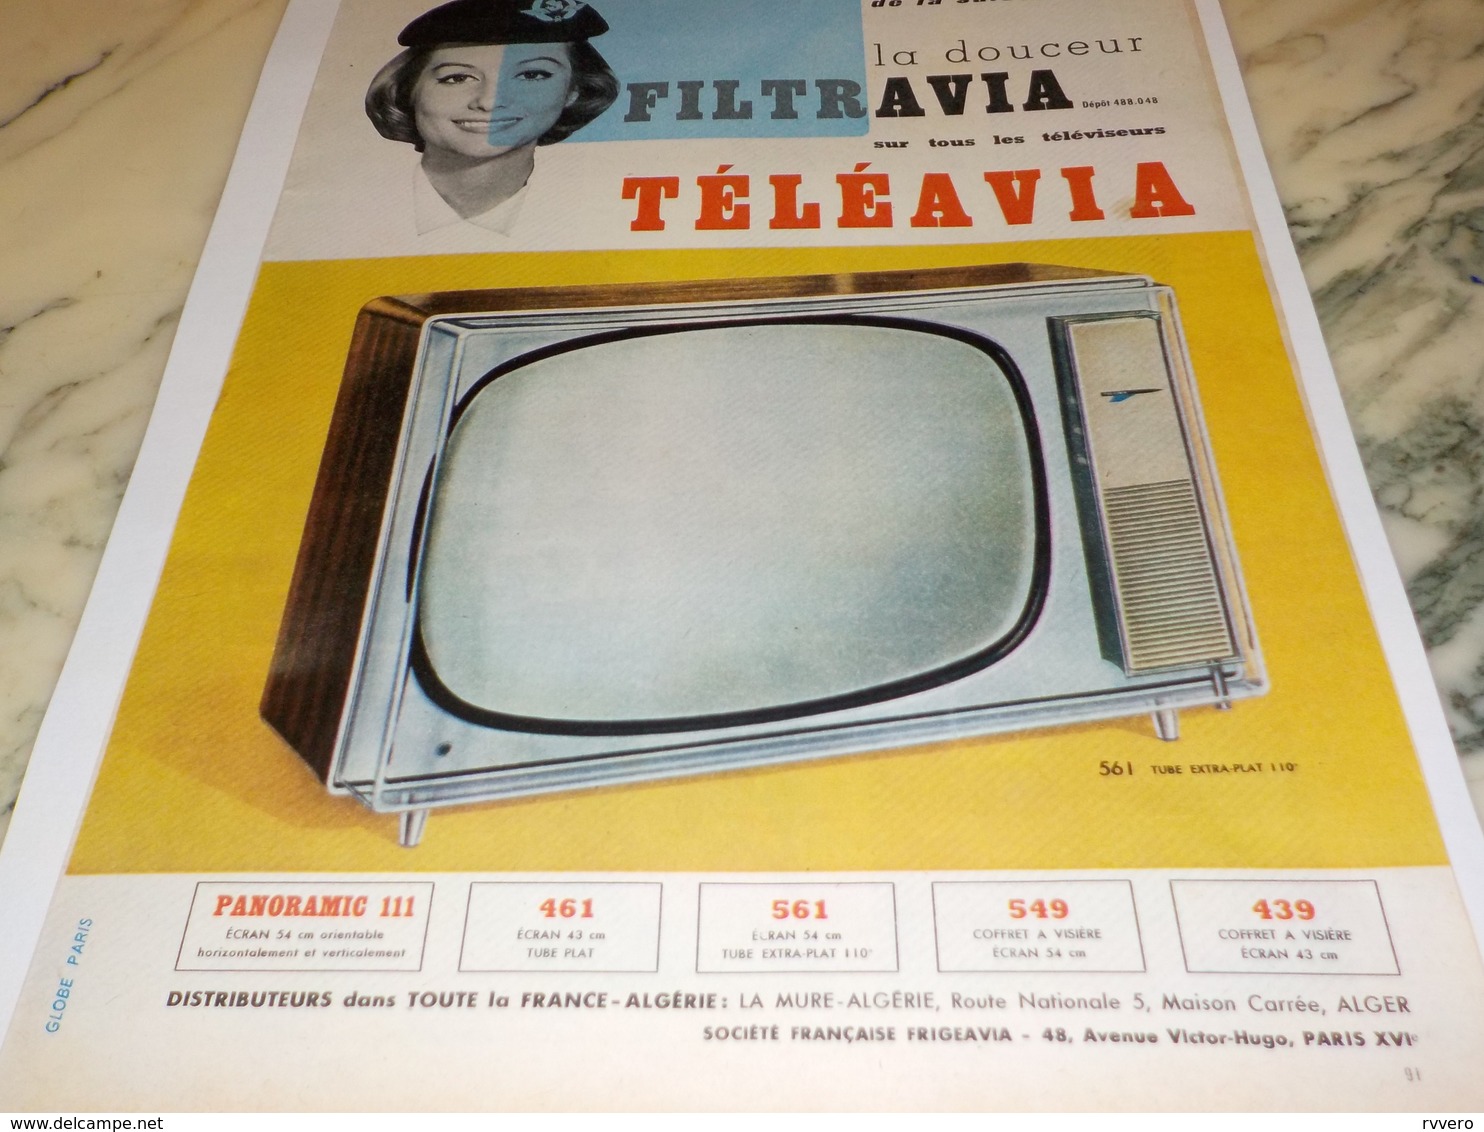 ANCIENNE PUBLICITE TELEVISION TELEAVIA  1960 - Televisión